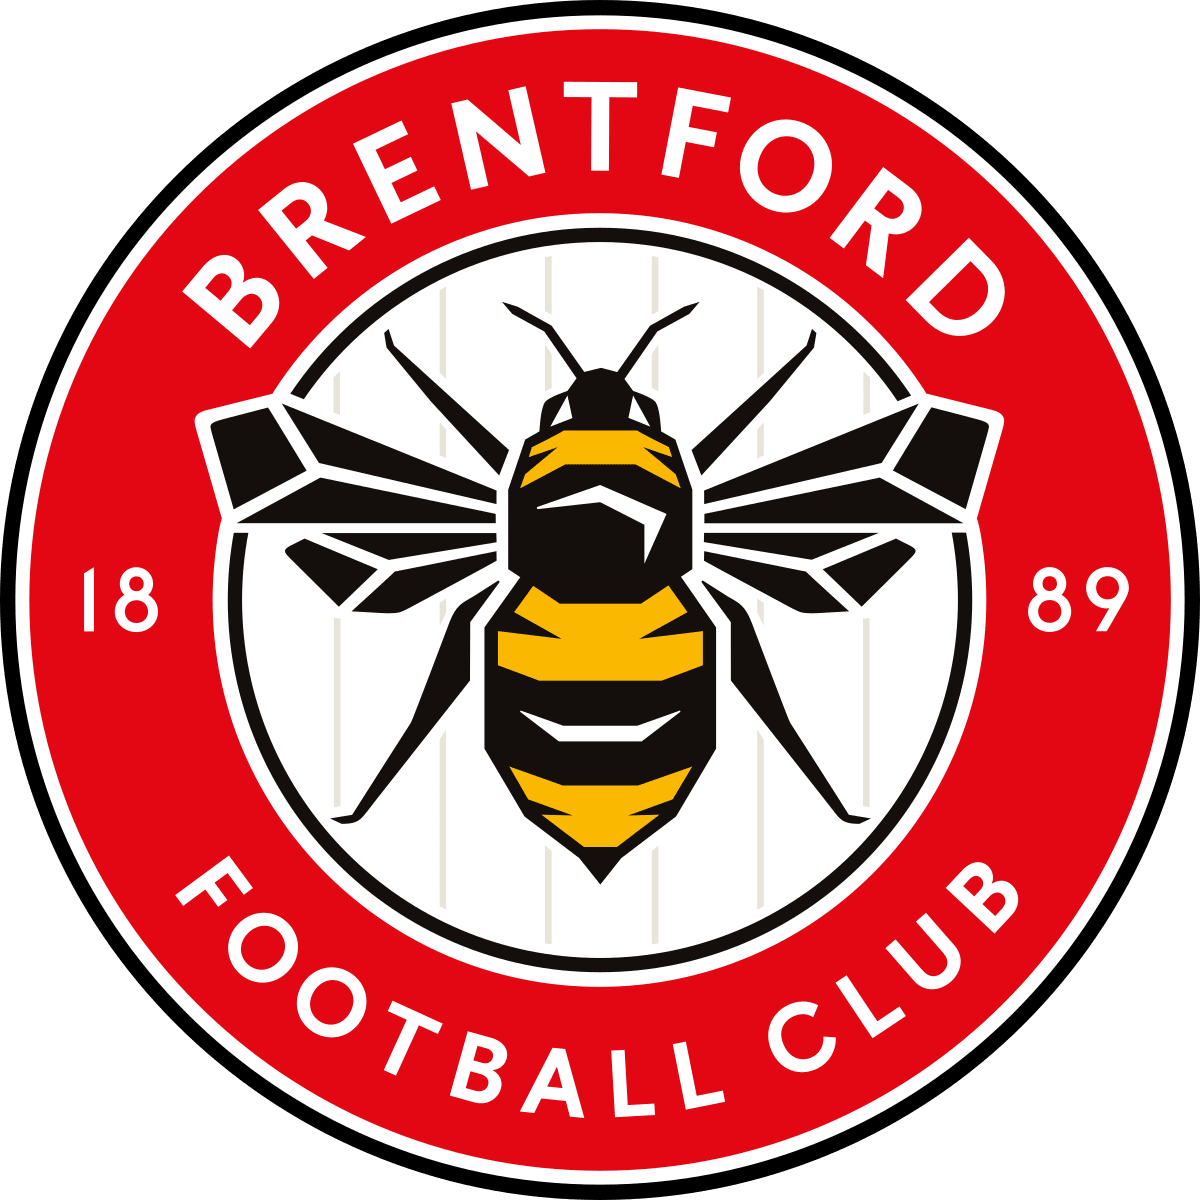 Fodbold rejser Brentford FC